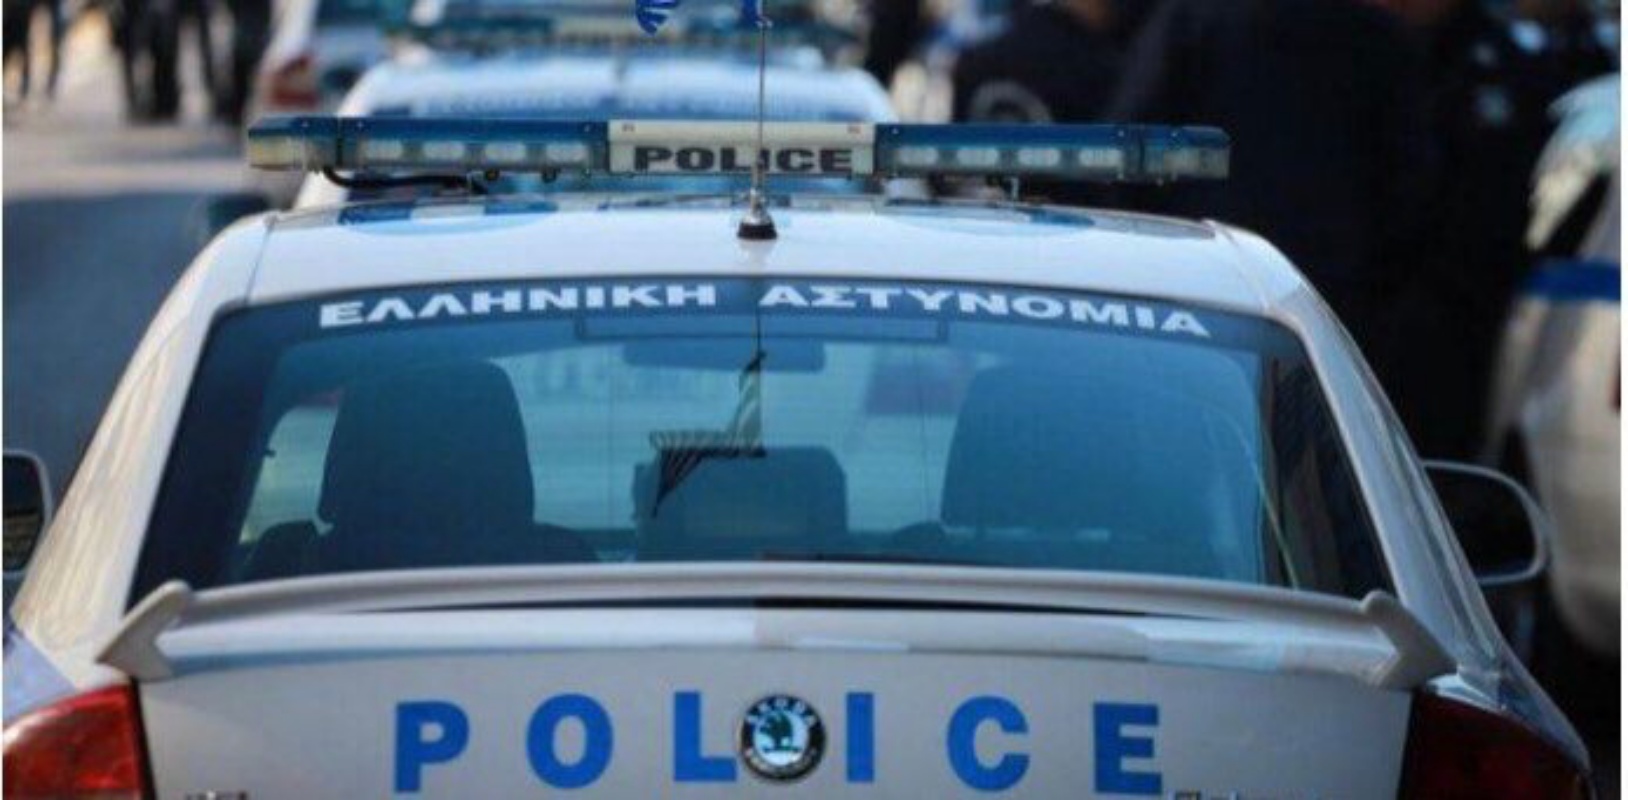 Θεσσαλονίκη: Συνελήφθη 25χρονος για απόπειρα βιασμού 19χρονης